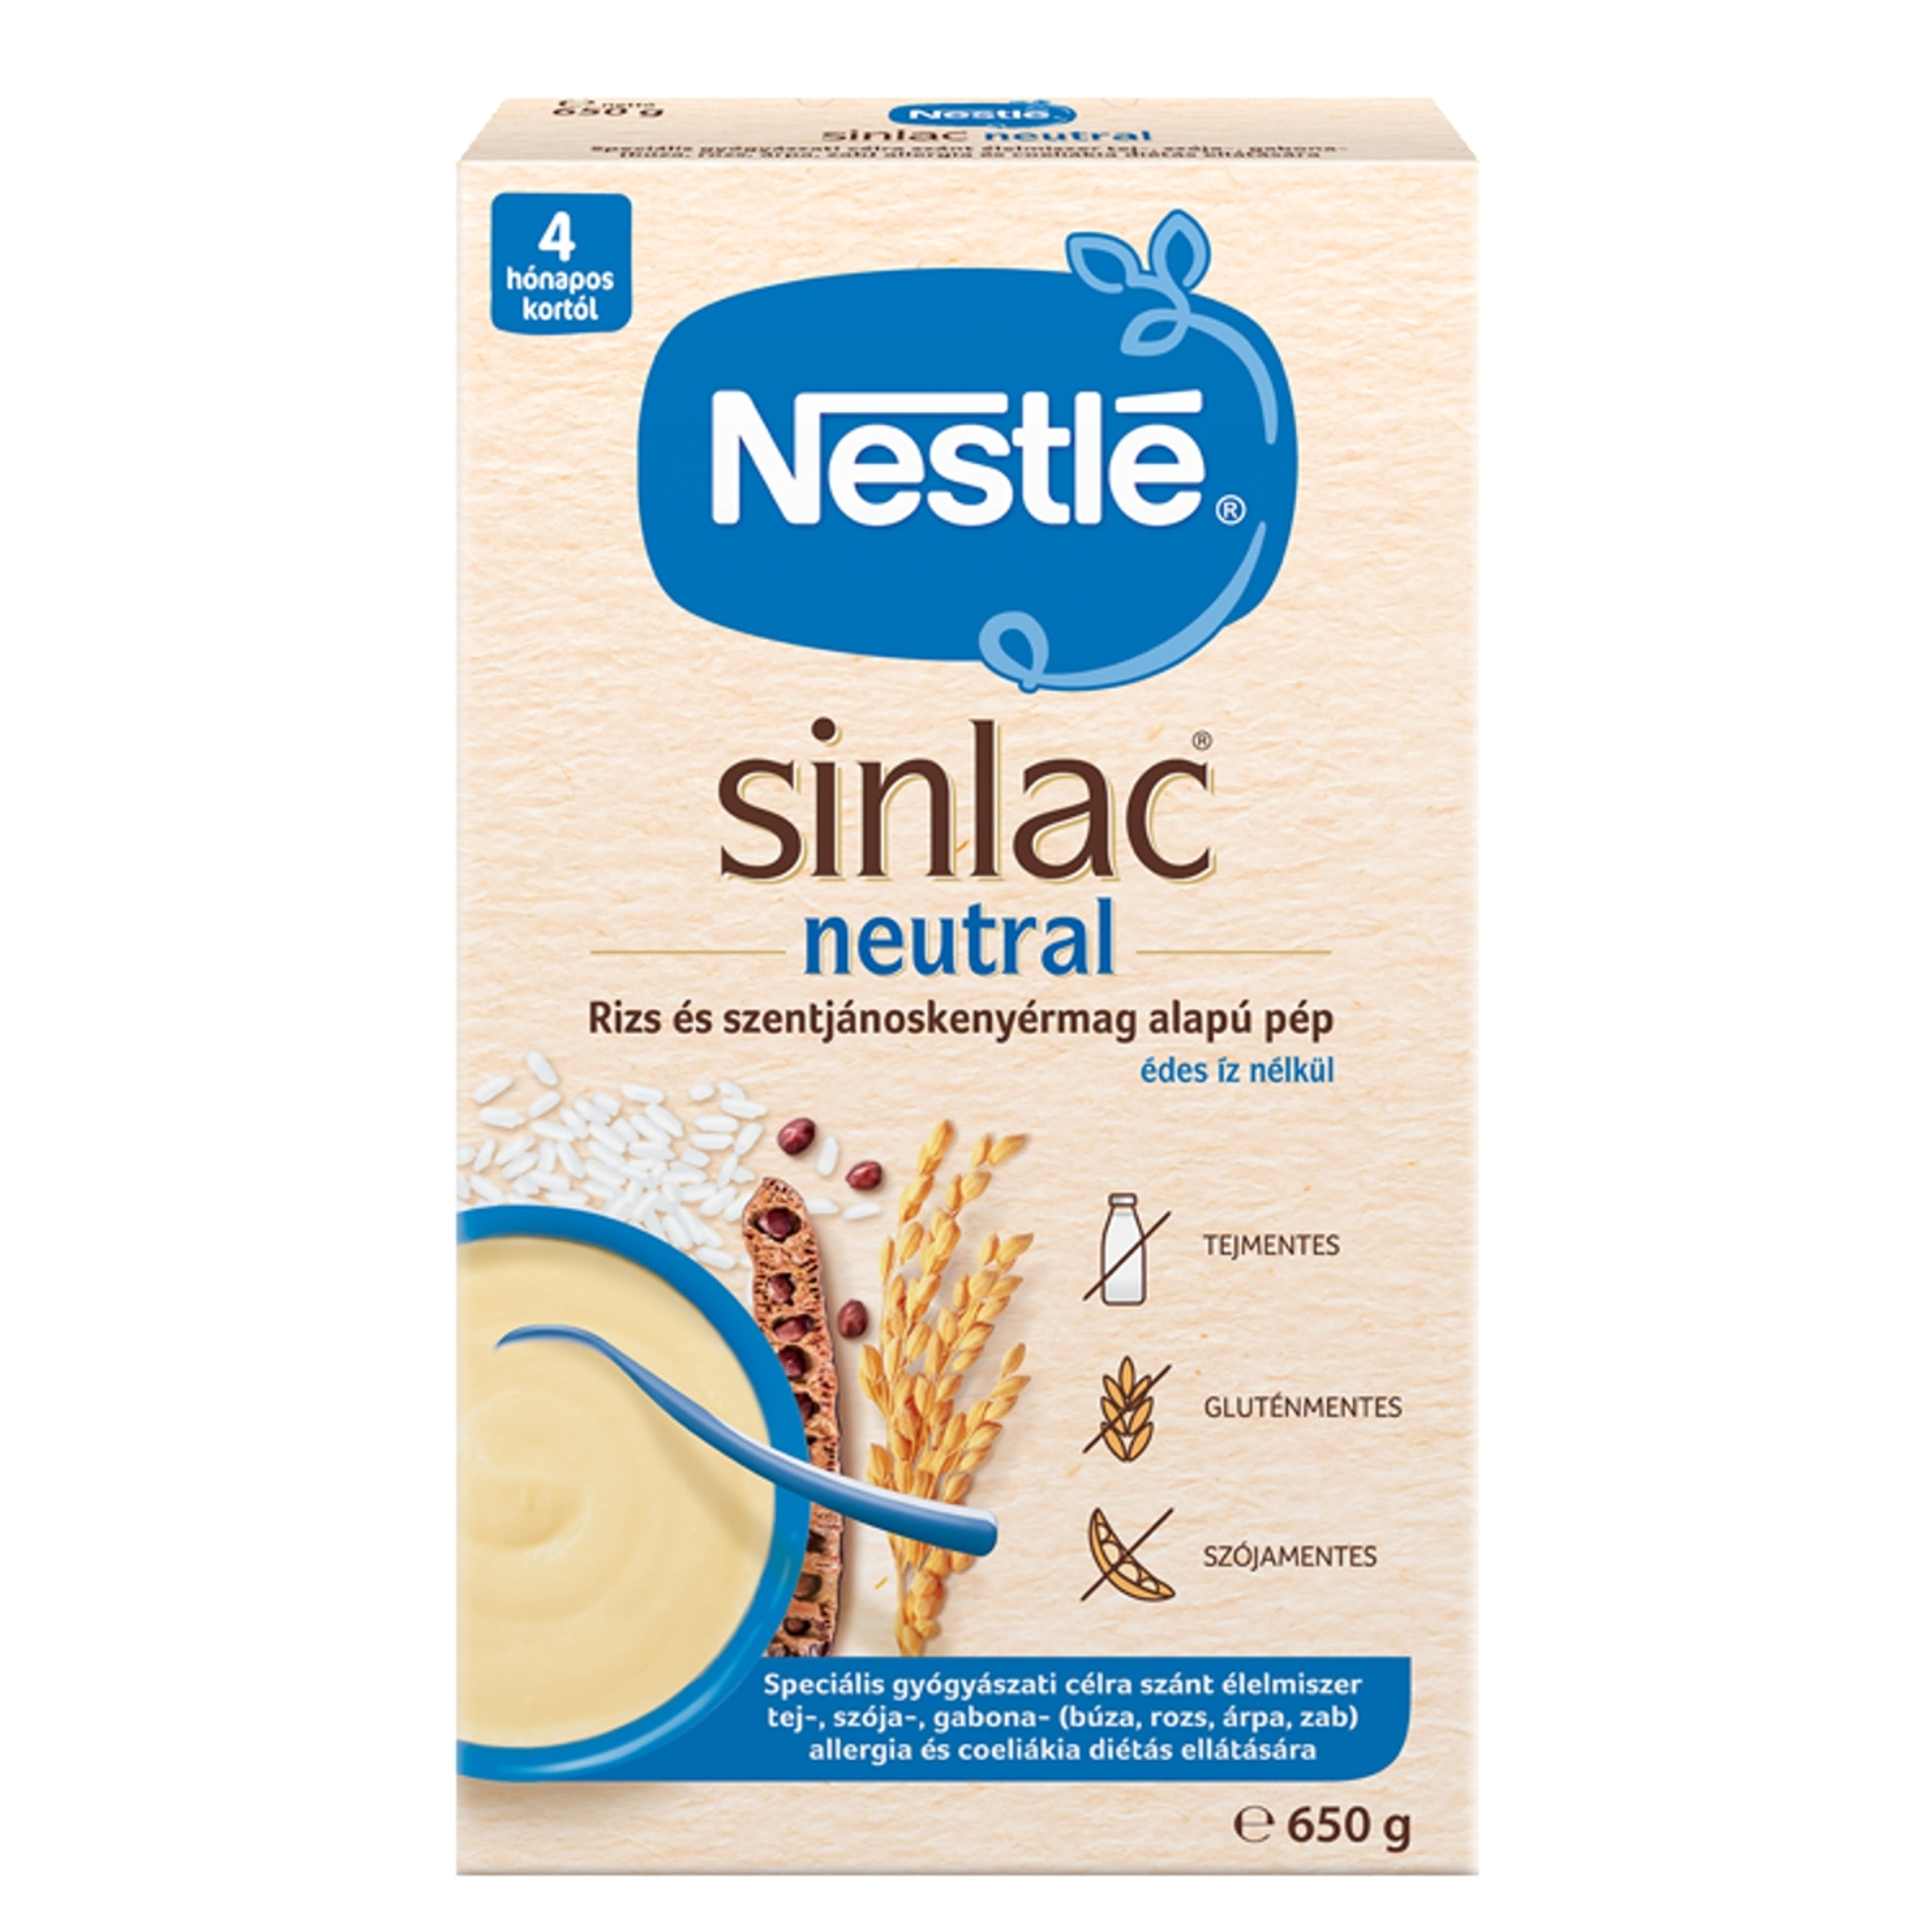 Nestle Sinlac Neutral Rizs-és szentjároskenyérmag alapú pép 4 hónapos kortól - 650g-1